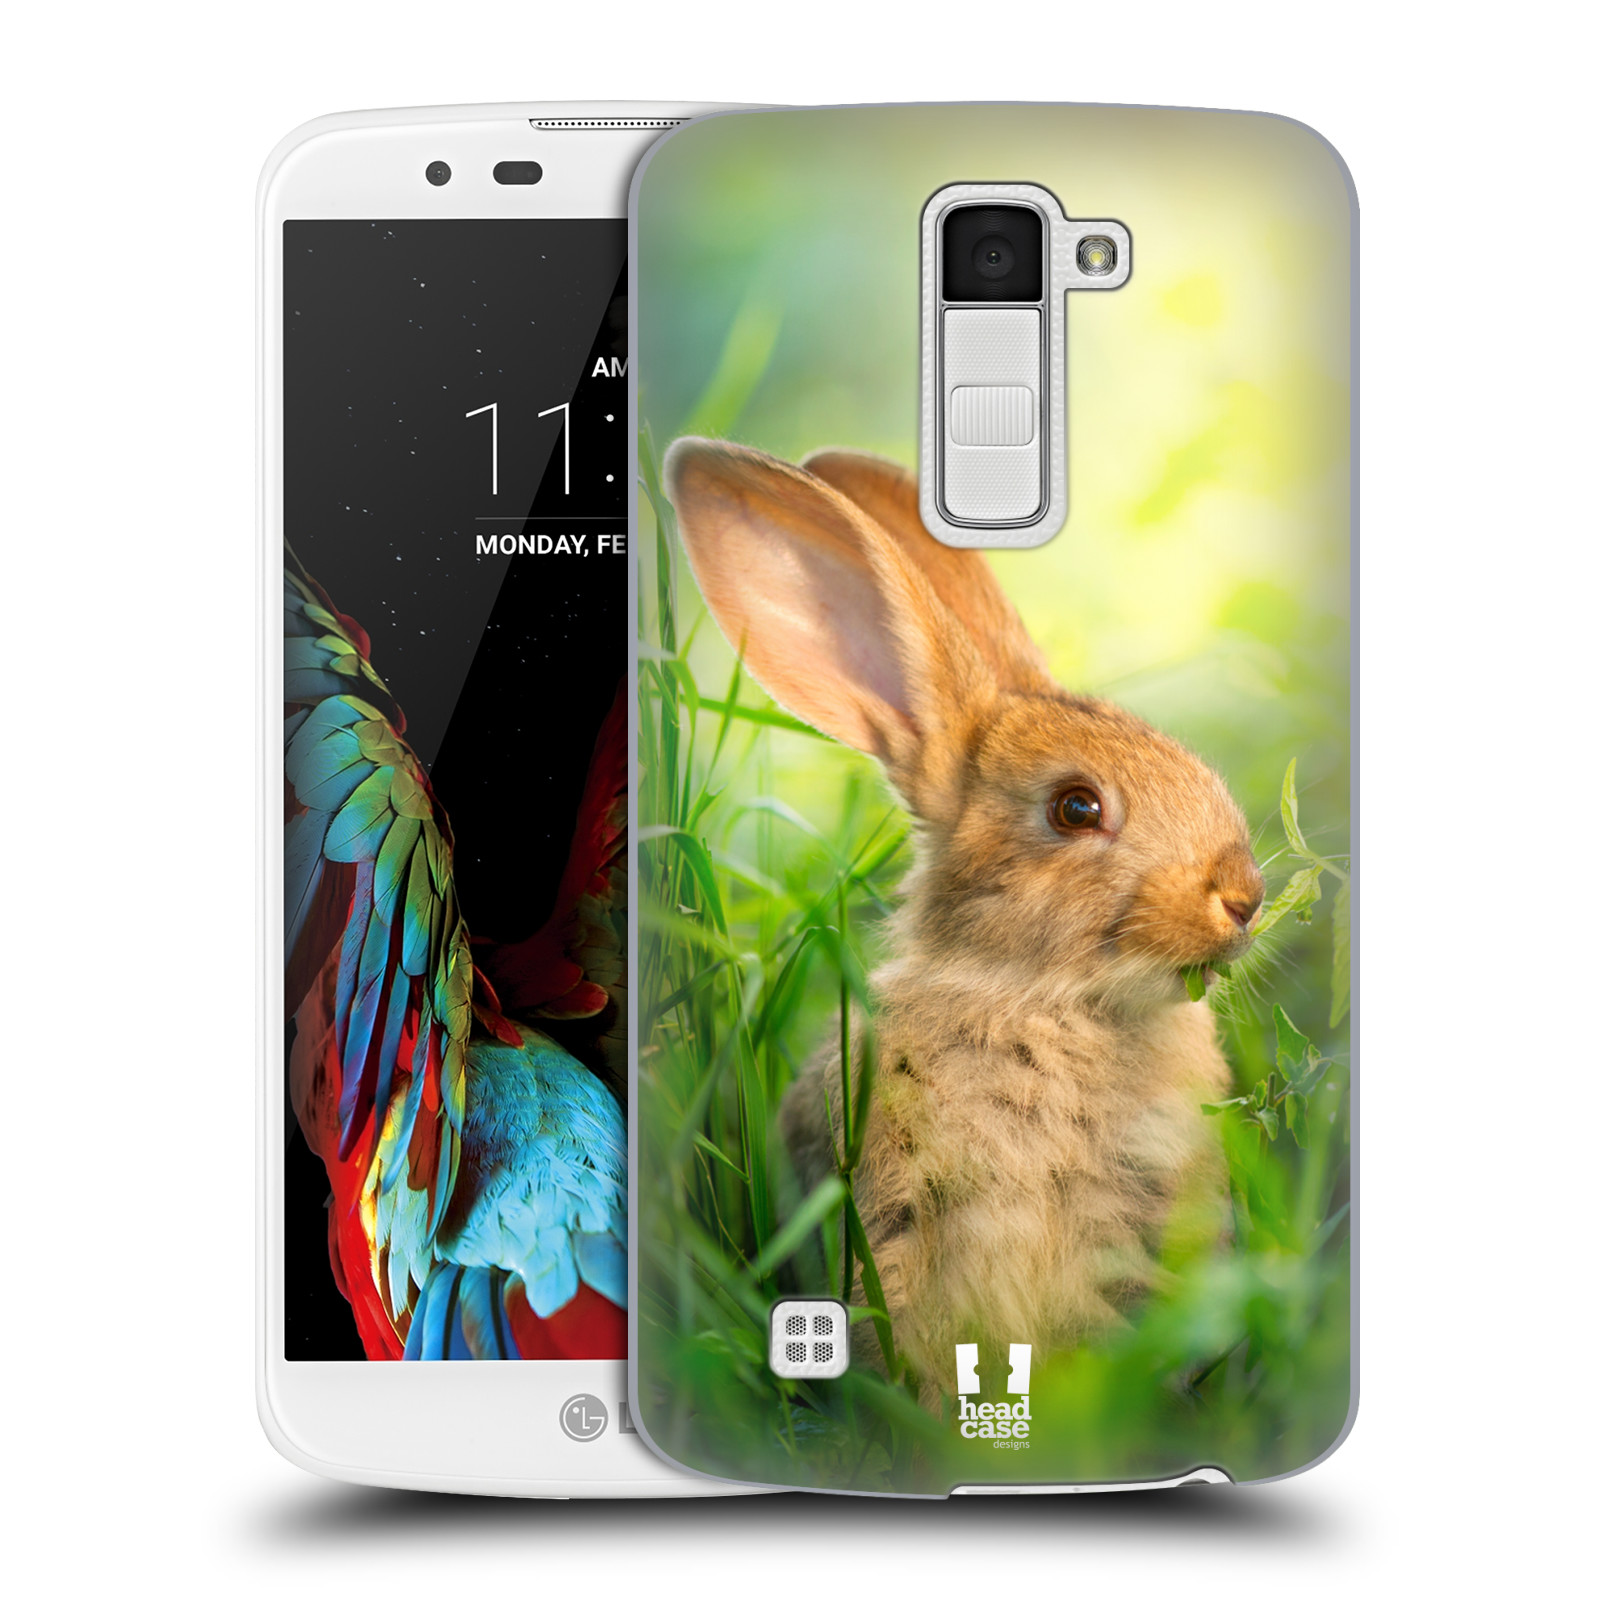 HEAD CASE plastový obal na mobil LG K10 vzor Divočina, Divoký život a zvířata foto ZAJÍČEK V TRÁVĚ ZELENÁ